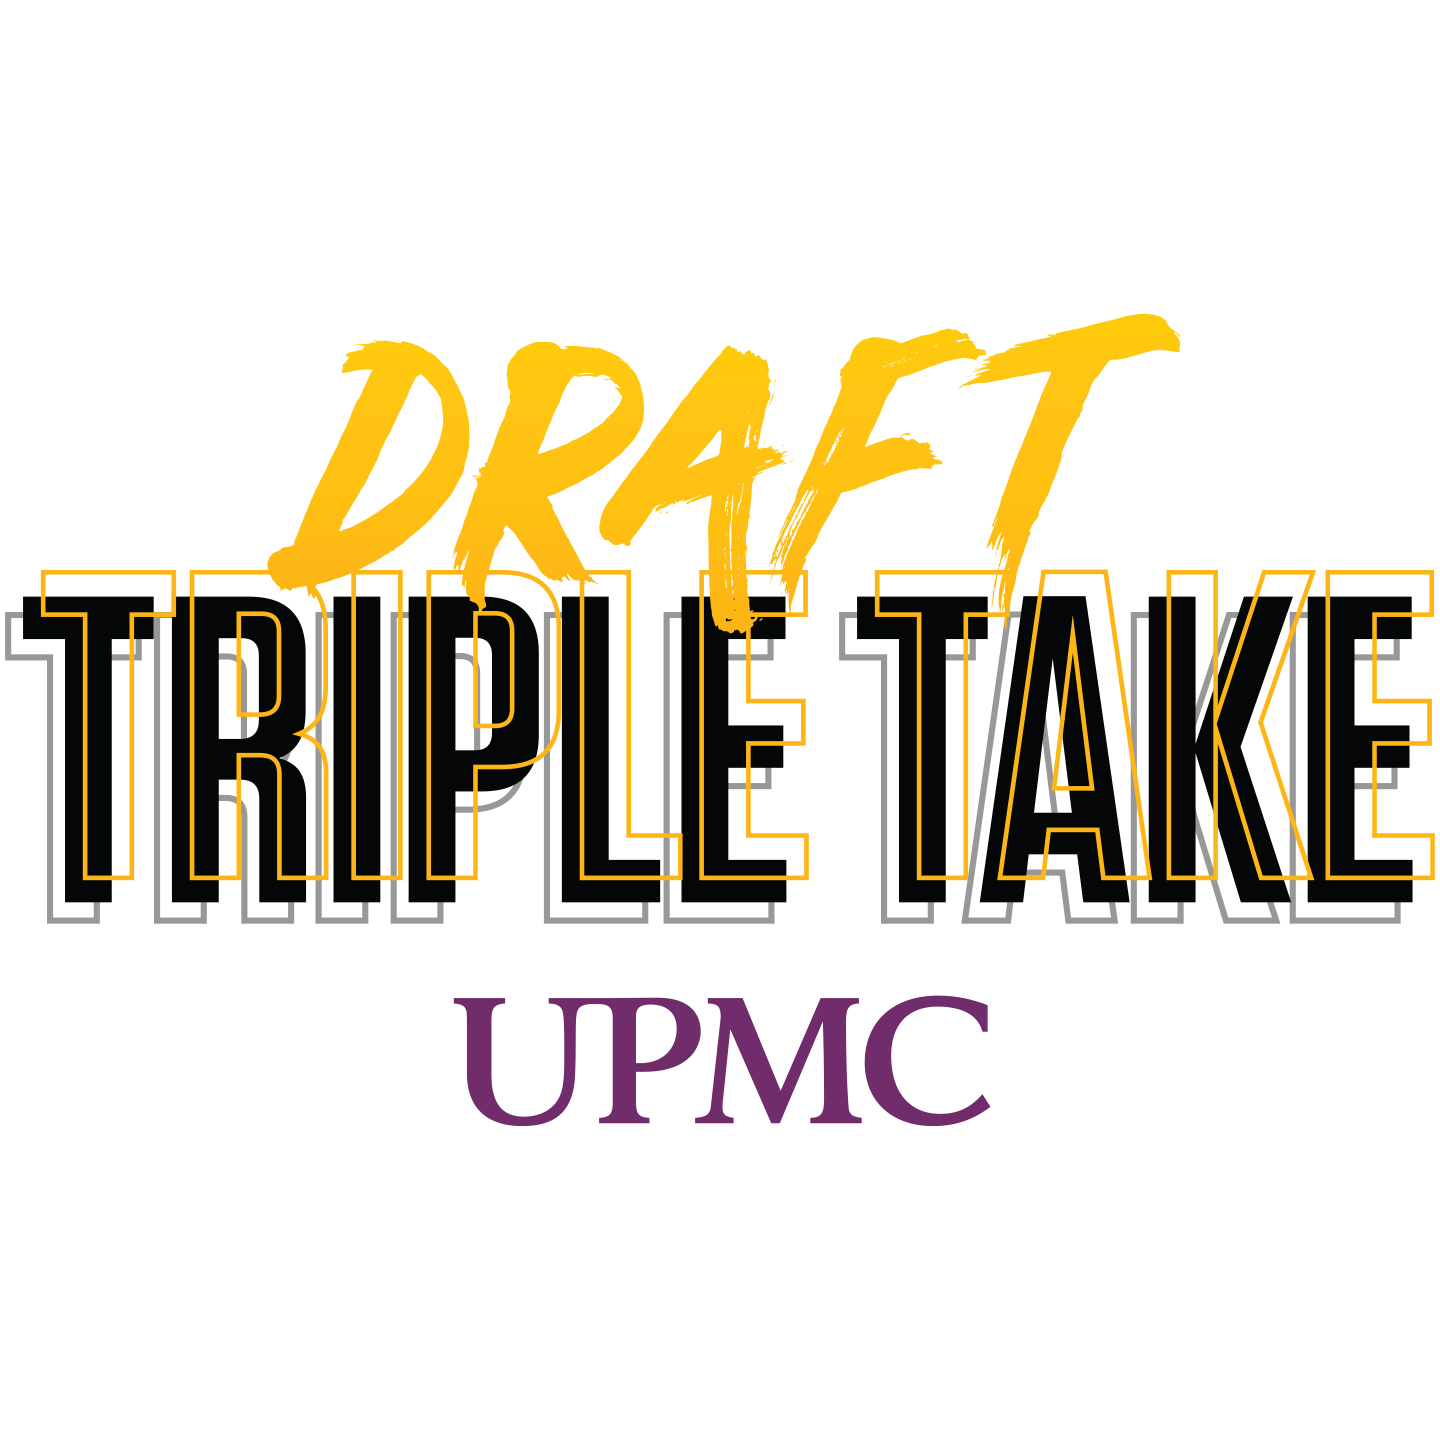 NFL Draft Triple Take (LB), March 20, 2021